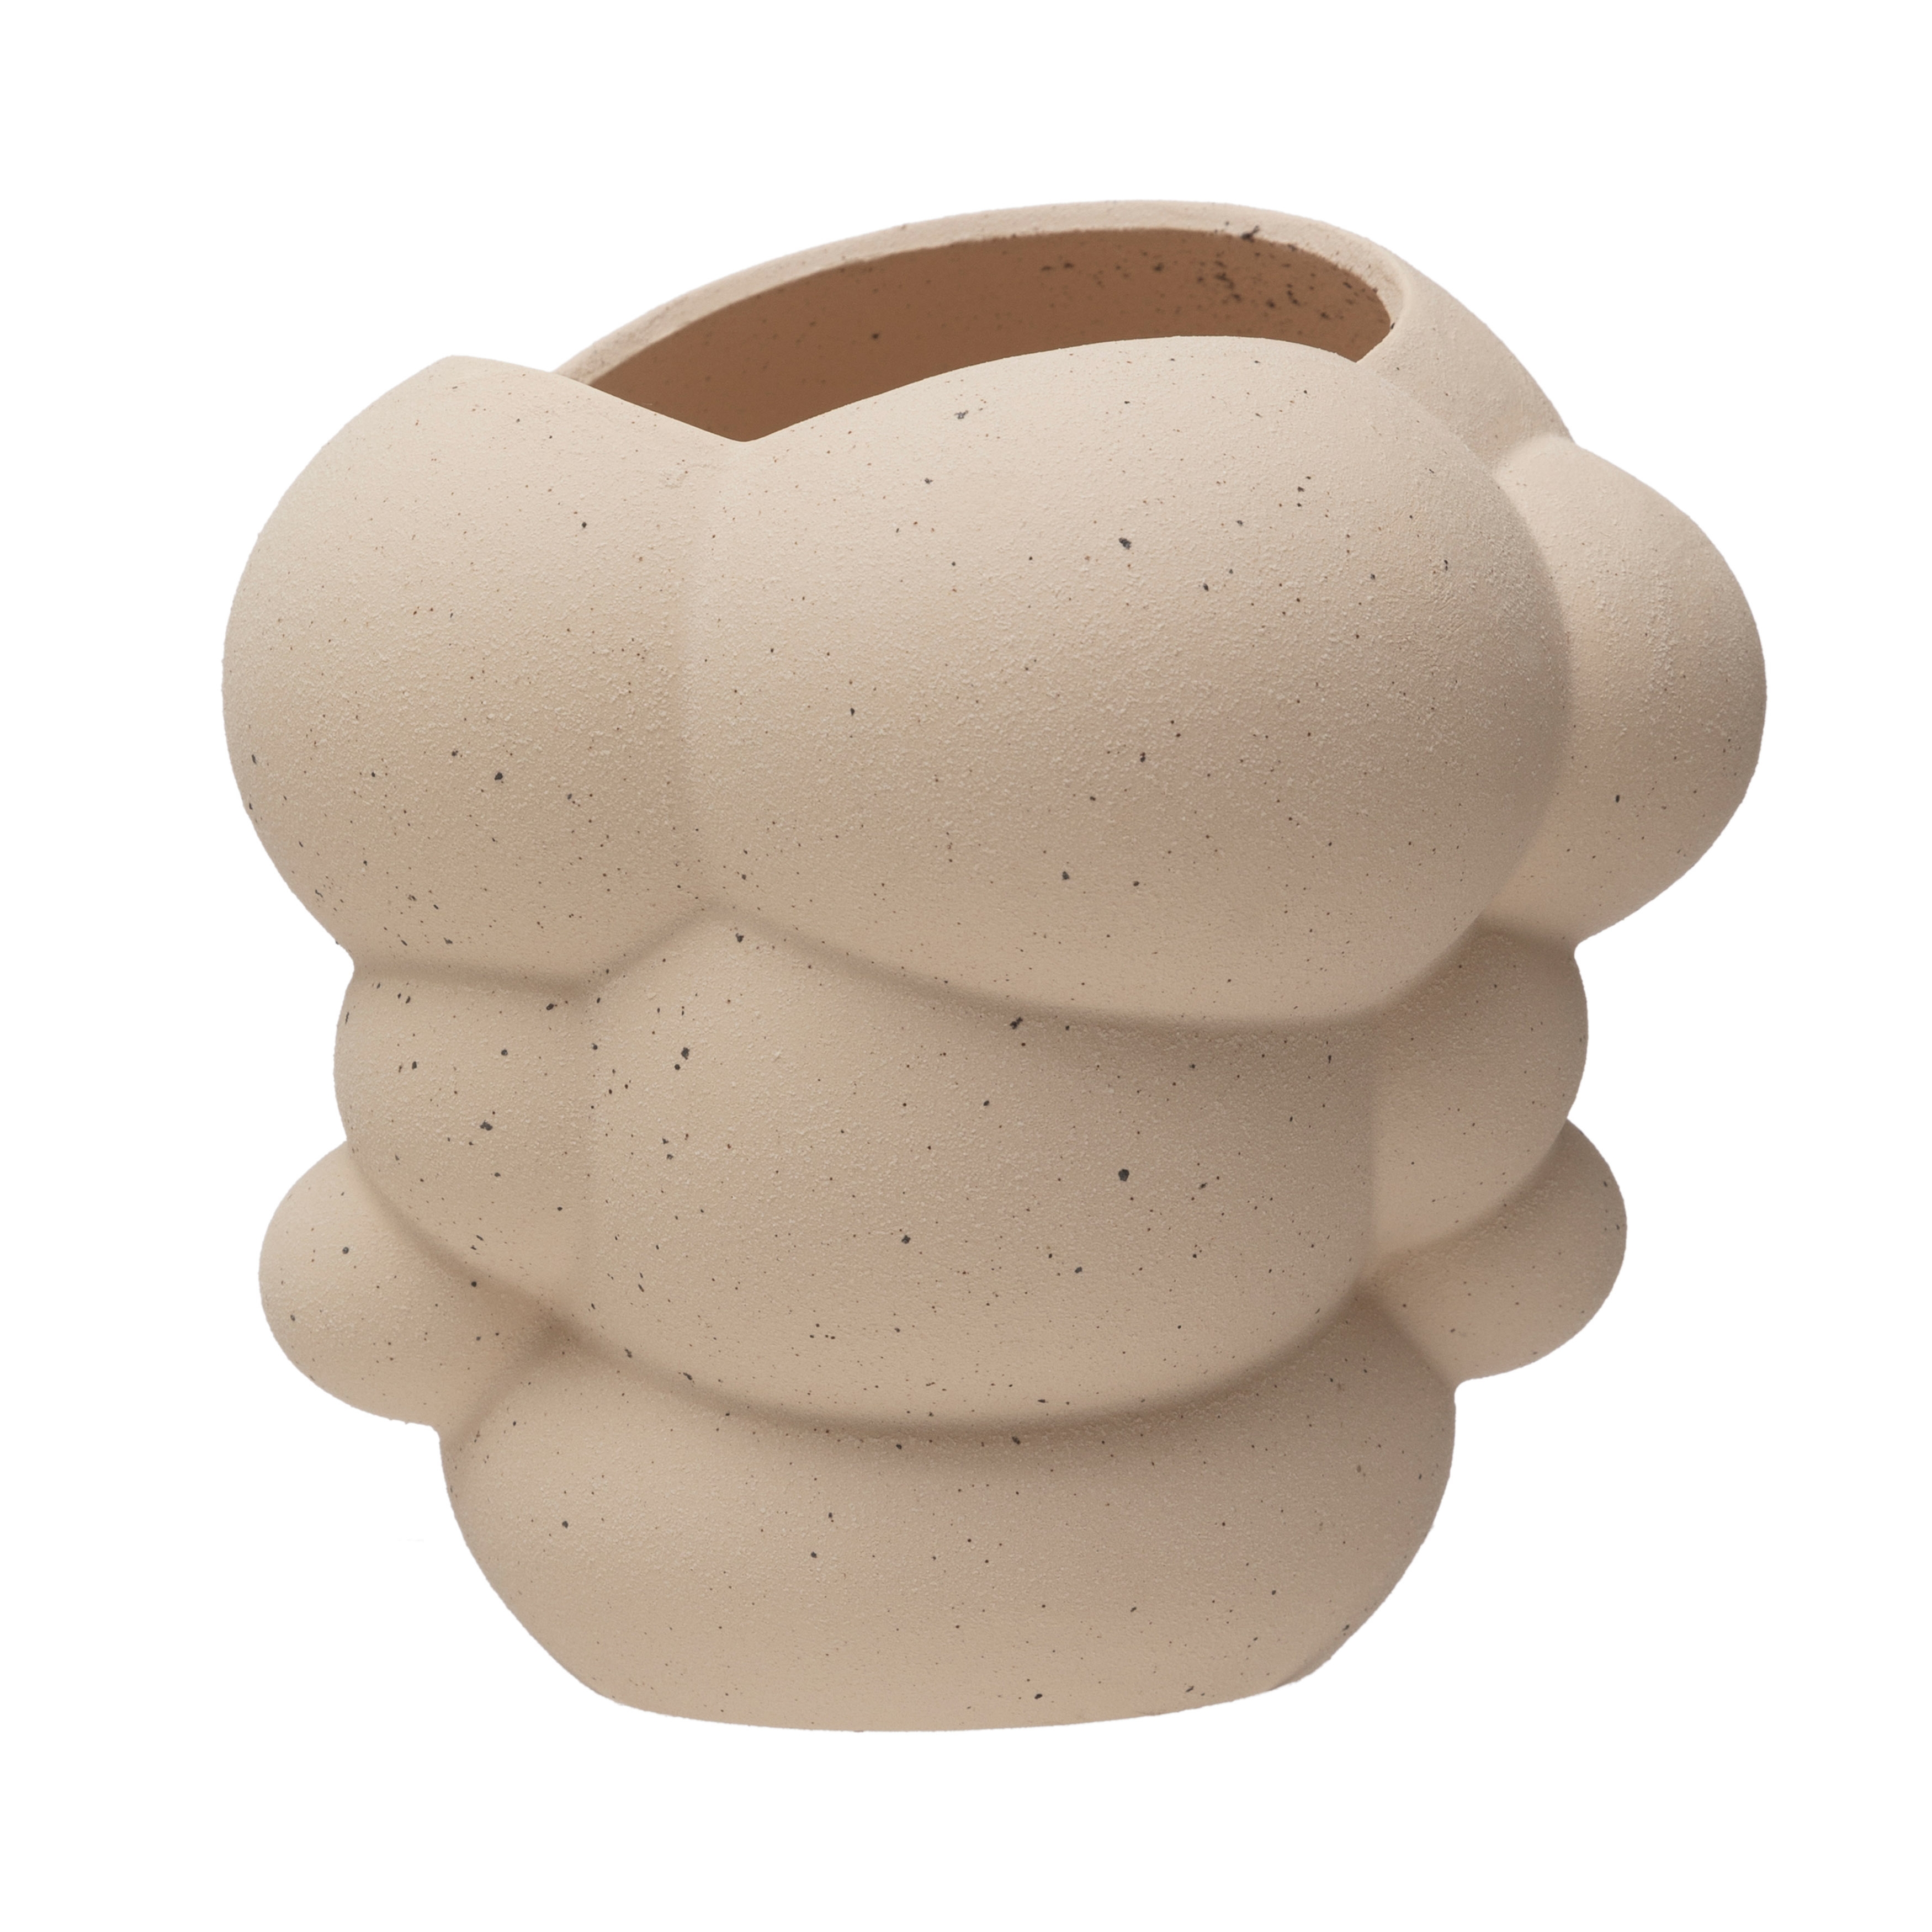  Stoneware Organic Shaped Vase, Cream Sand Finish - Image 0